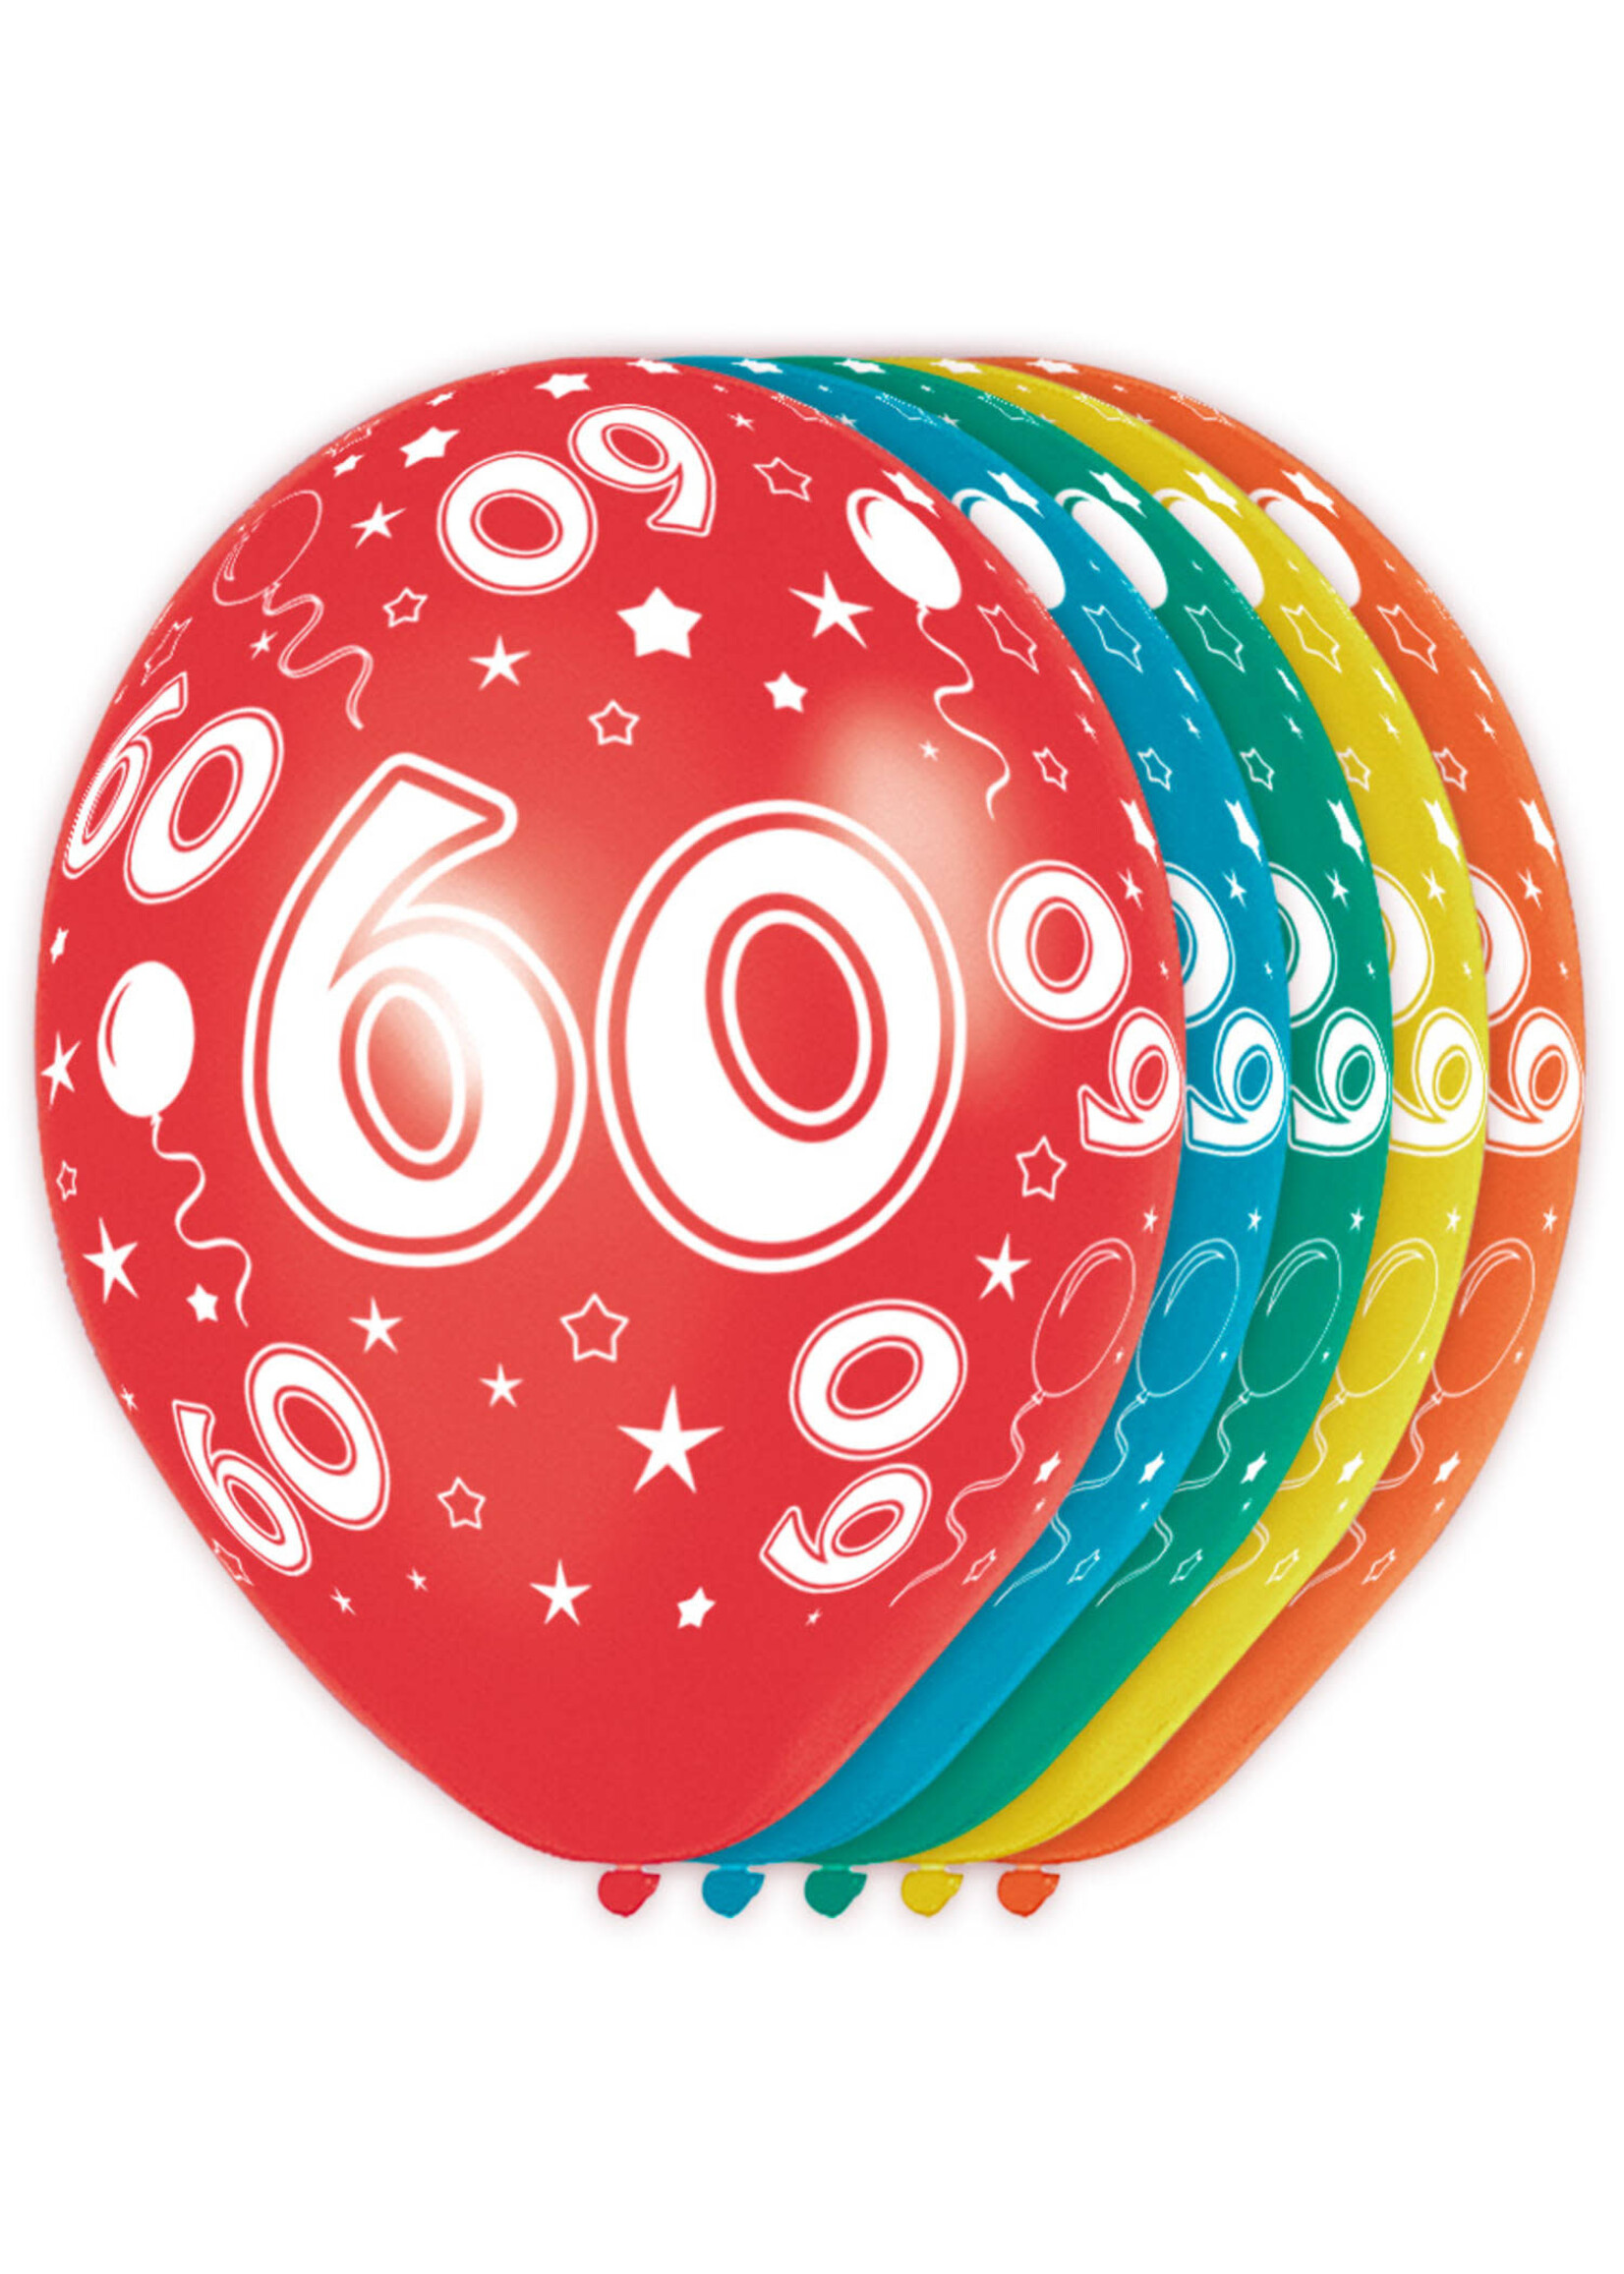 Feestkleding Breda Ballonnen 60 jaar